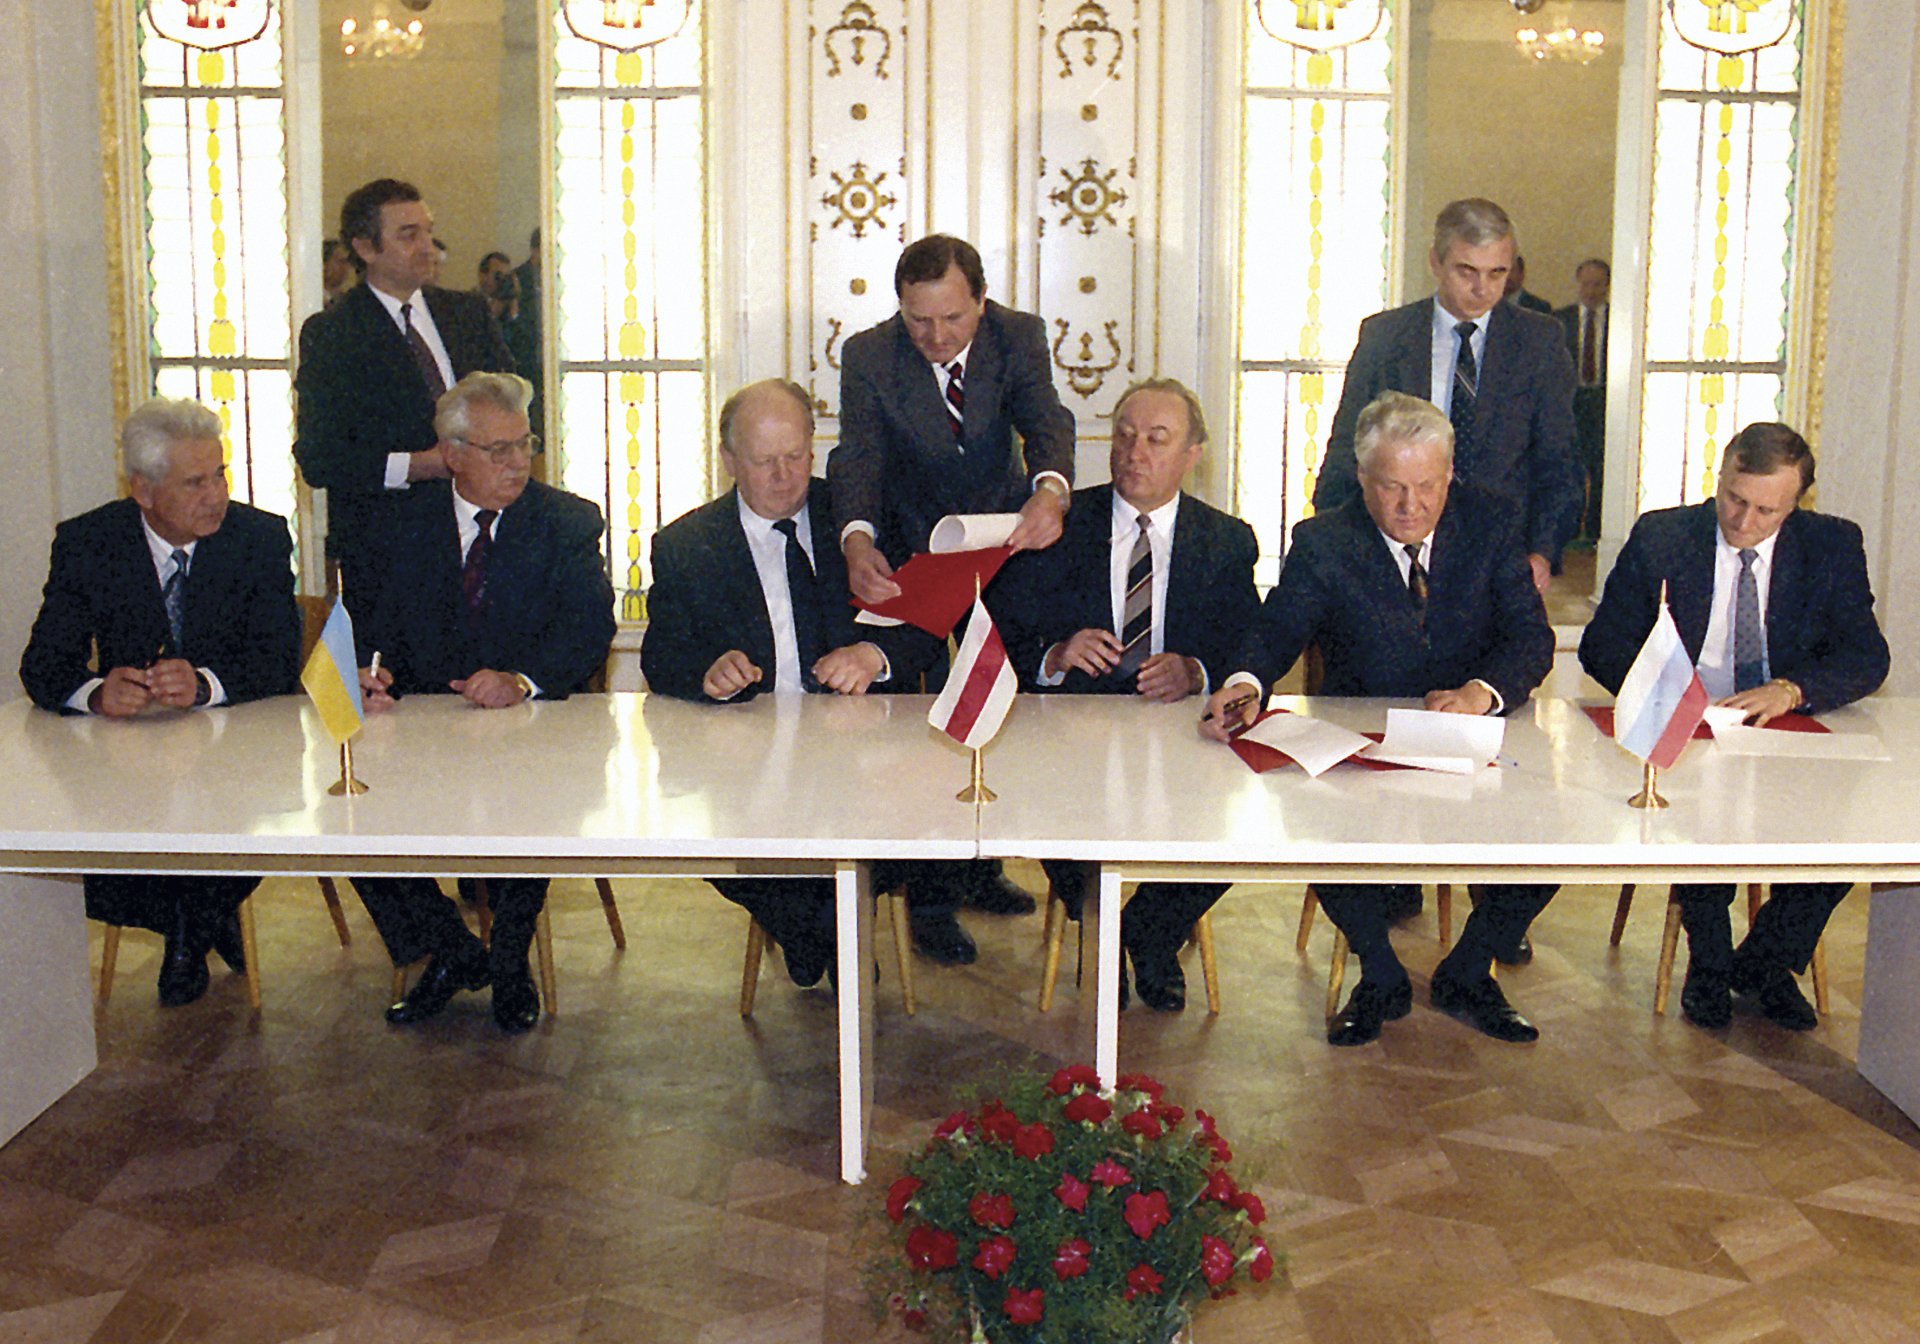 8 декември 1991 г. Президентът на Русия Борис Елцин, втори вдясно, президентът на Украйна Леонид Кравчук, втори вляво, лидерът на Беларус Станислав Шушкевич, трети вляво, държавният секретар на Русия Генадий Бурбулис, вдясно, премиерът на Беларус Вячеслав Кебич, трети вдясно, и премиерът на Украйна Витолд Фокин, вляво, подписват споразумение за прекратяване на Съветския съюз и обявяване на създаването на Общността на независимите държави във Вискули, Беларус